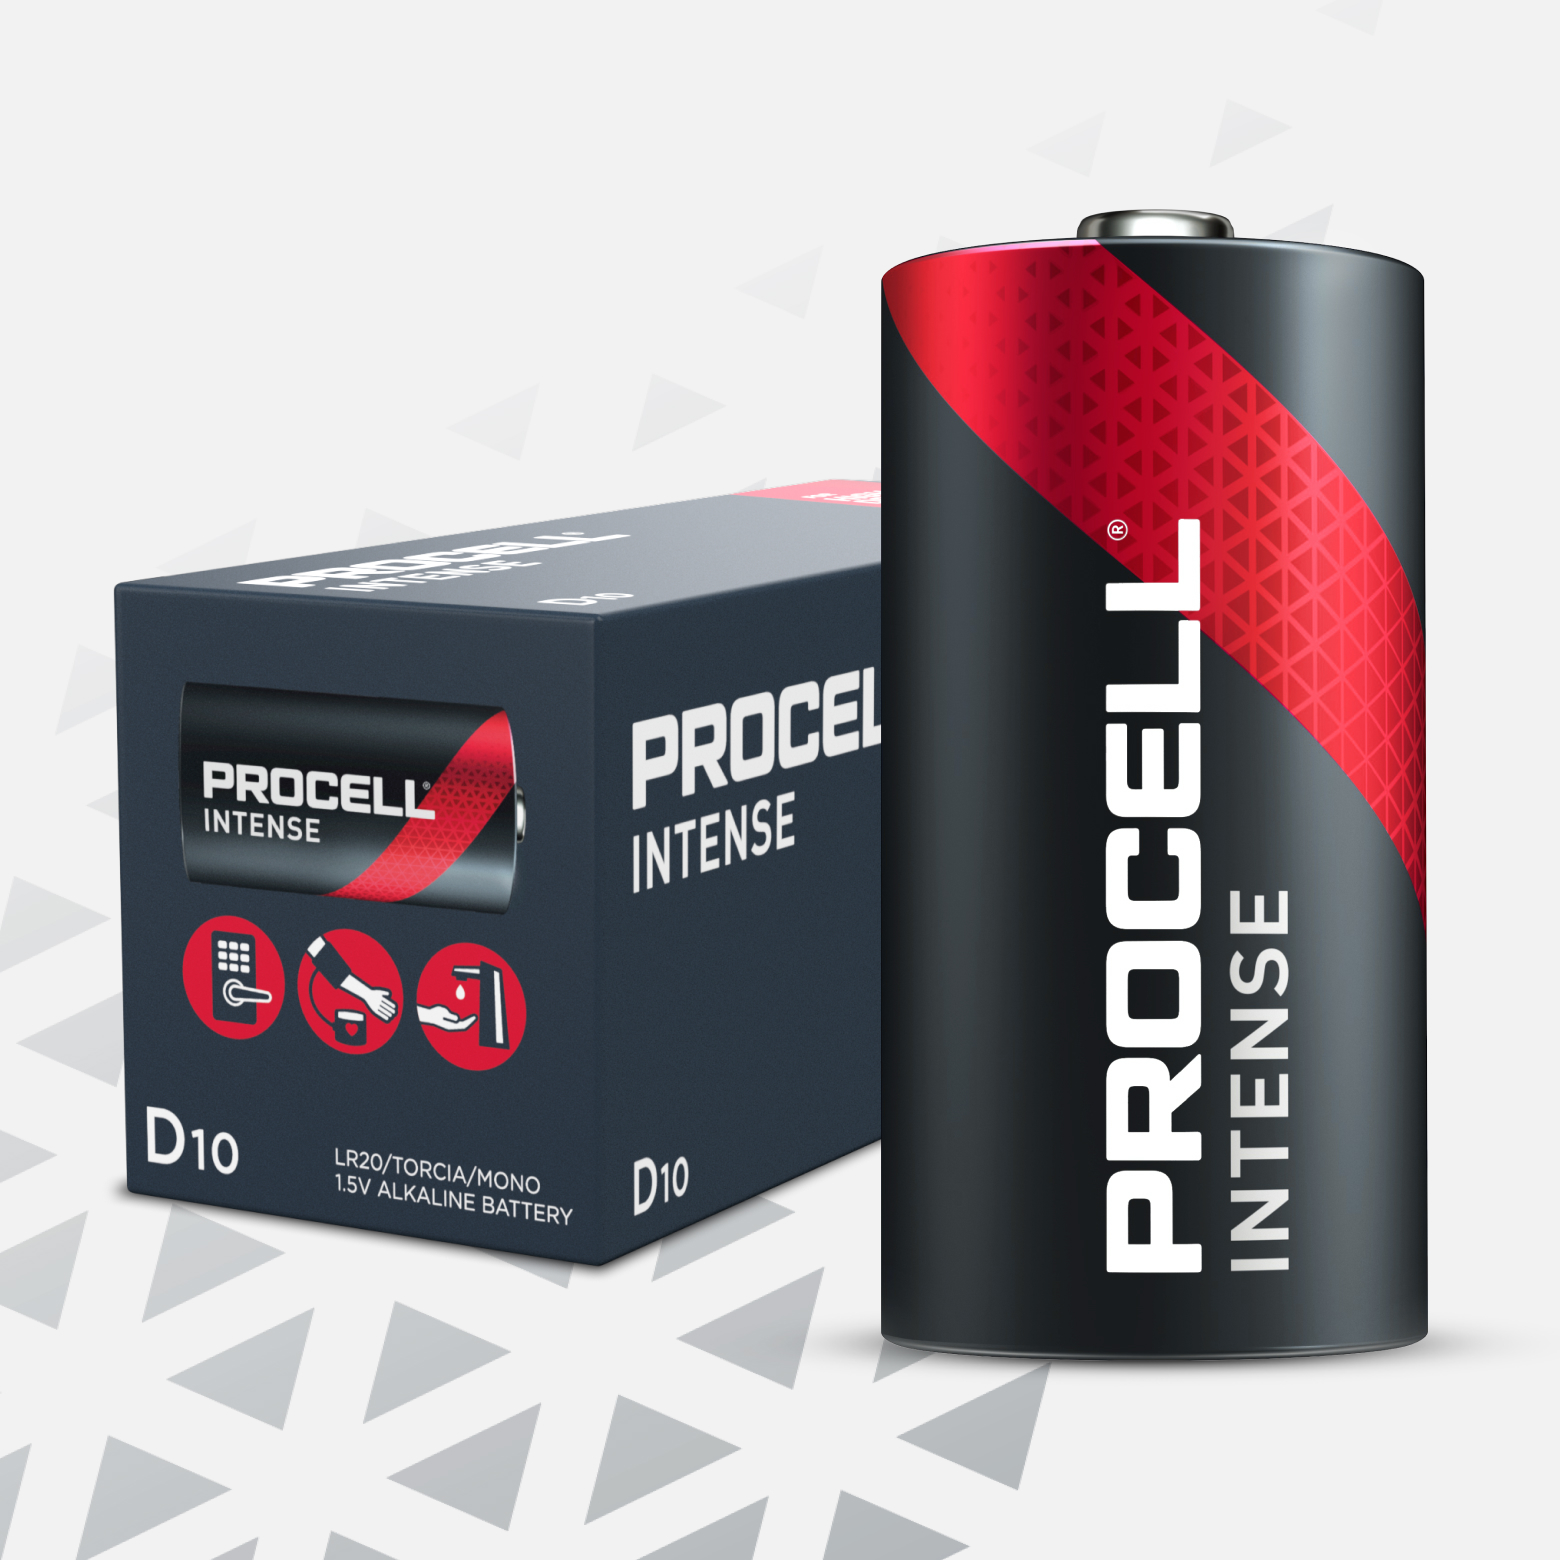 Procell - Intense - D